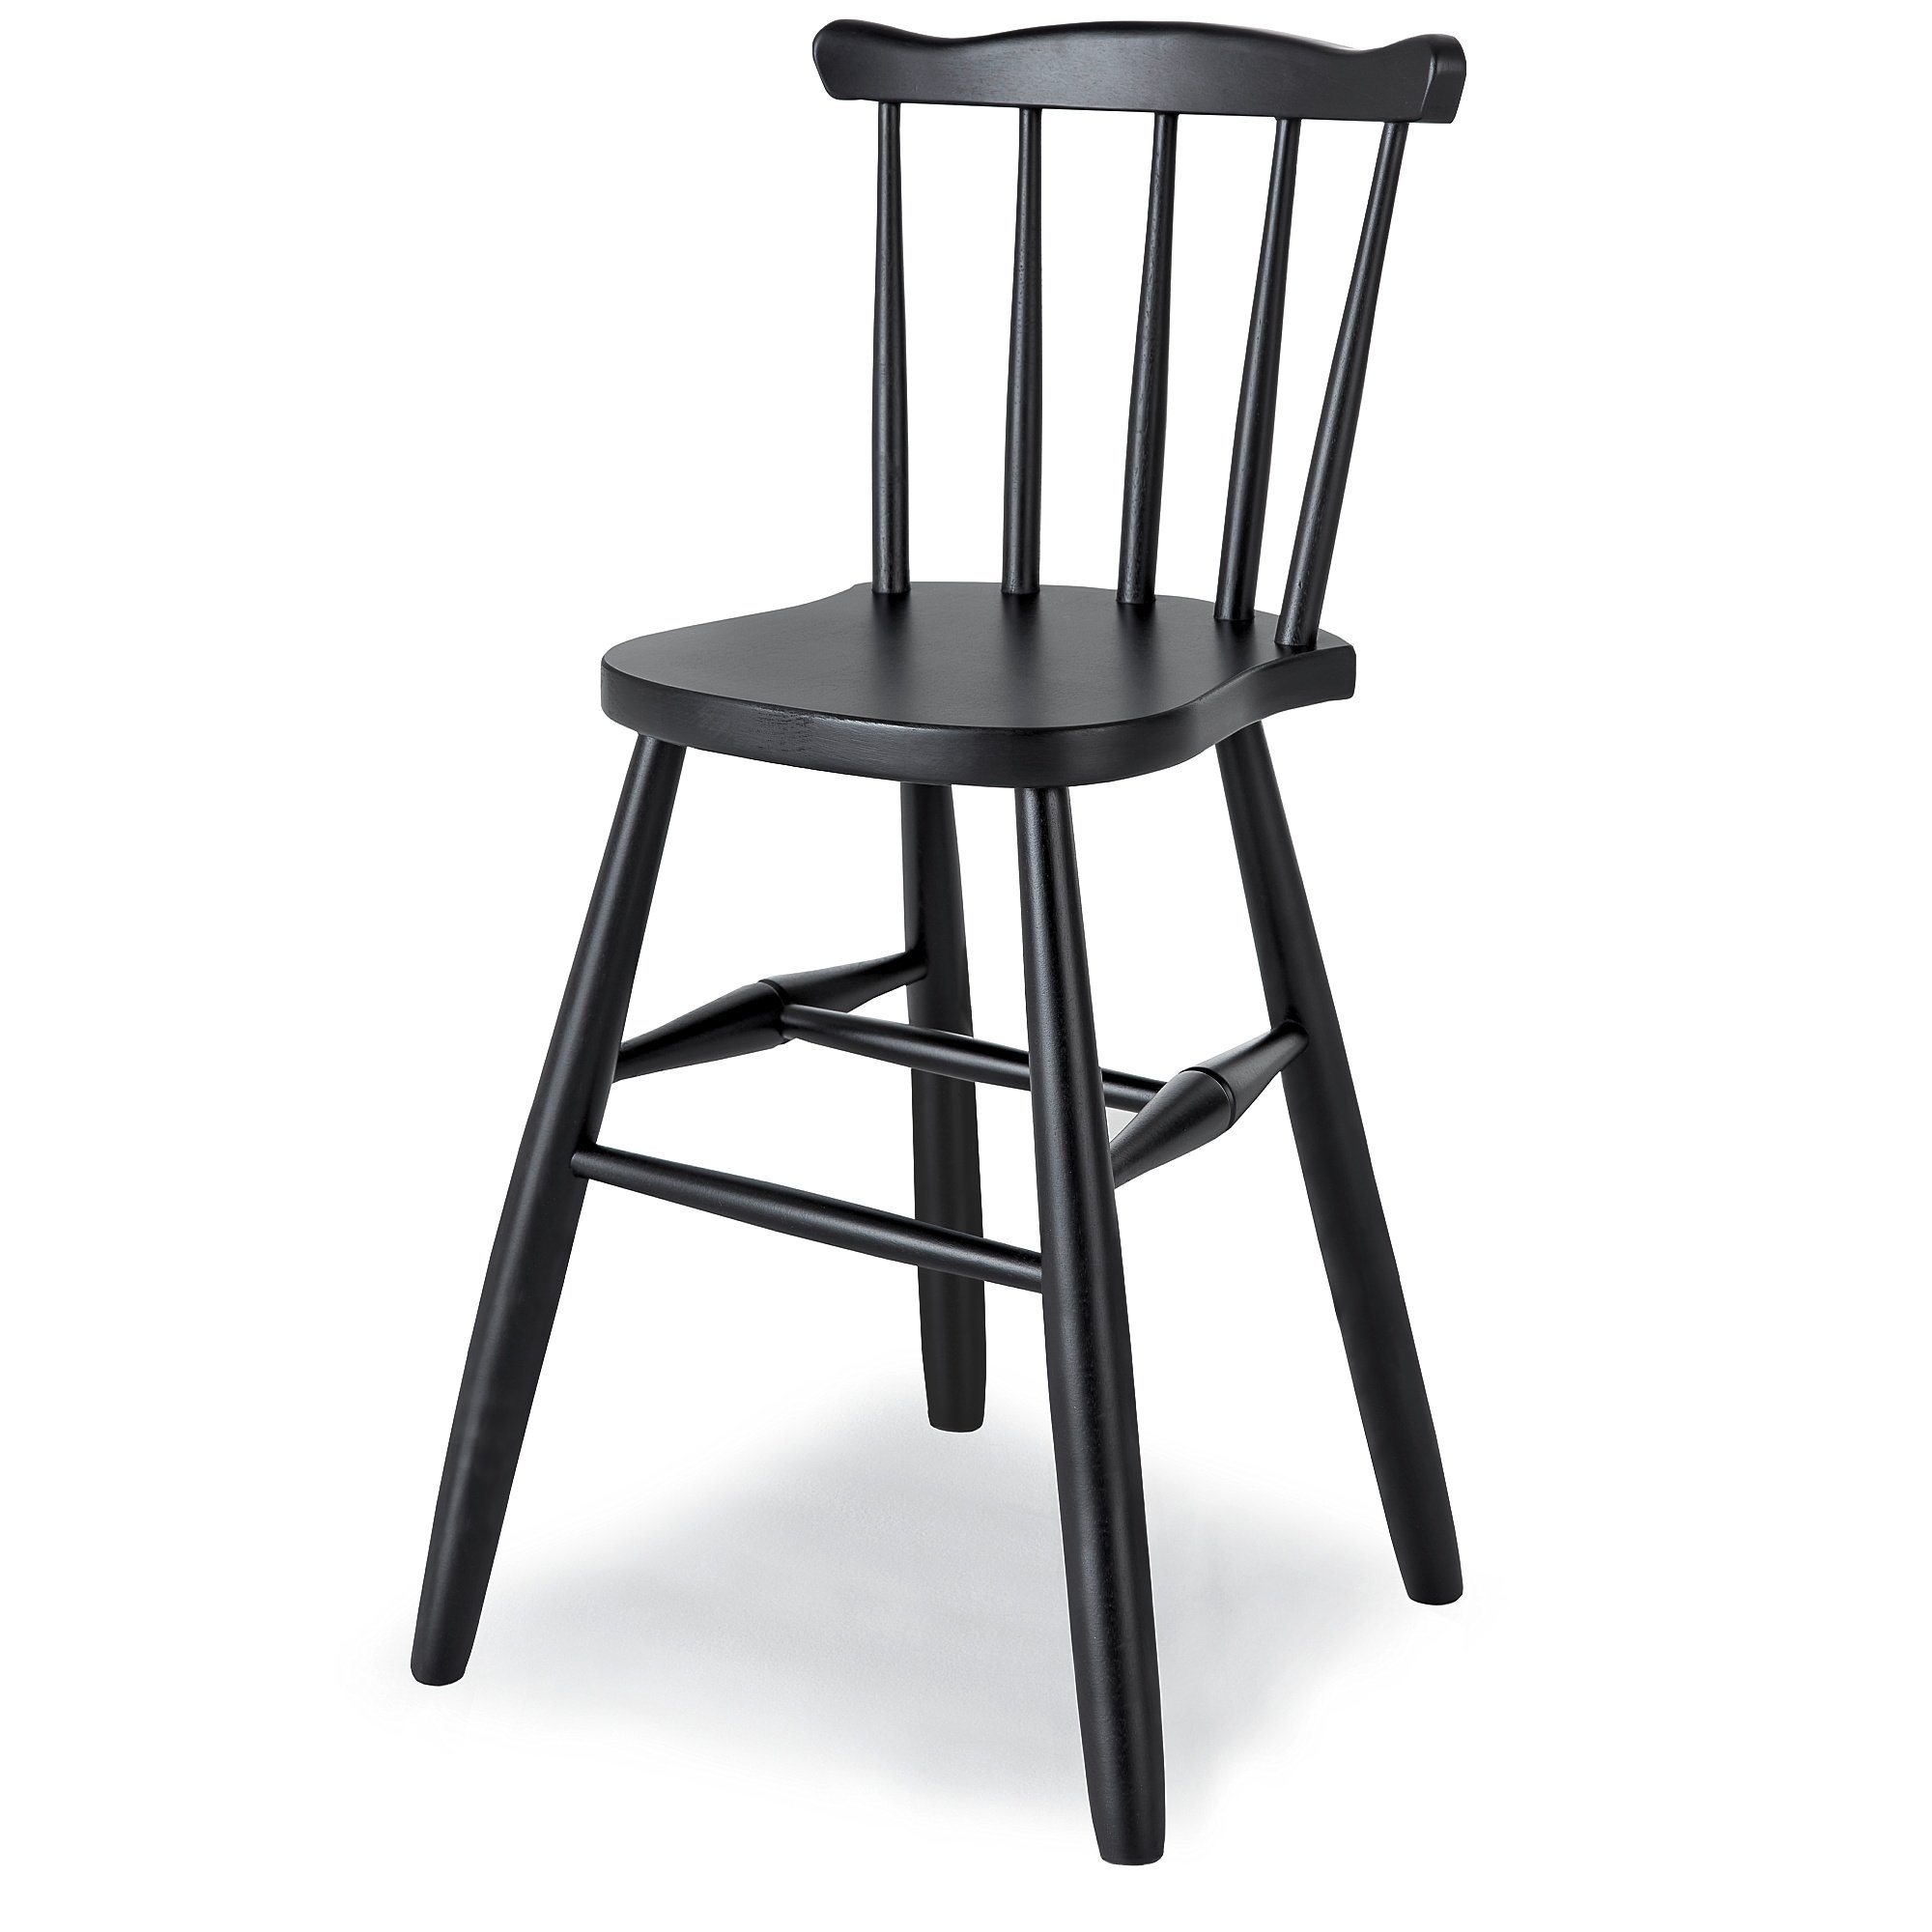 Dětská židle BASIC, výška 520 mm, černá